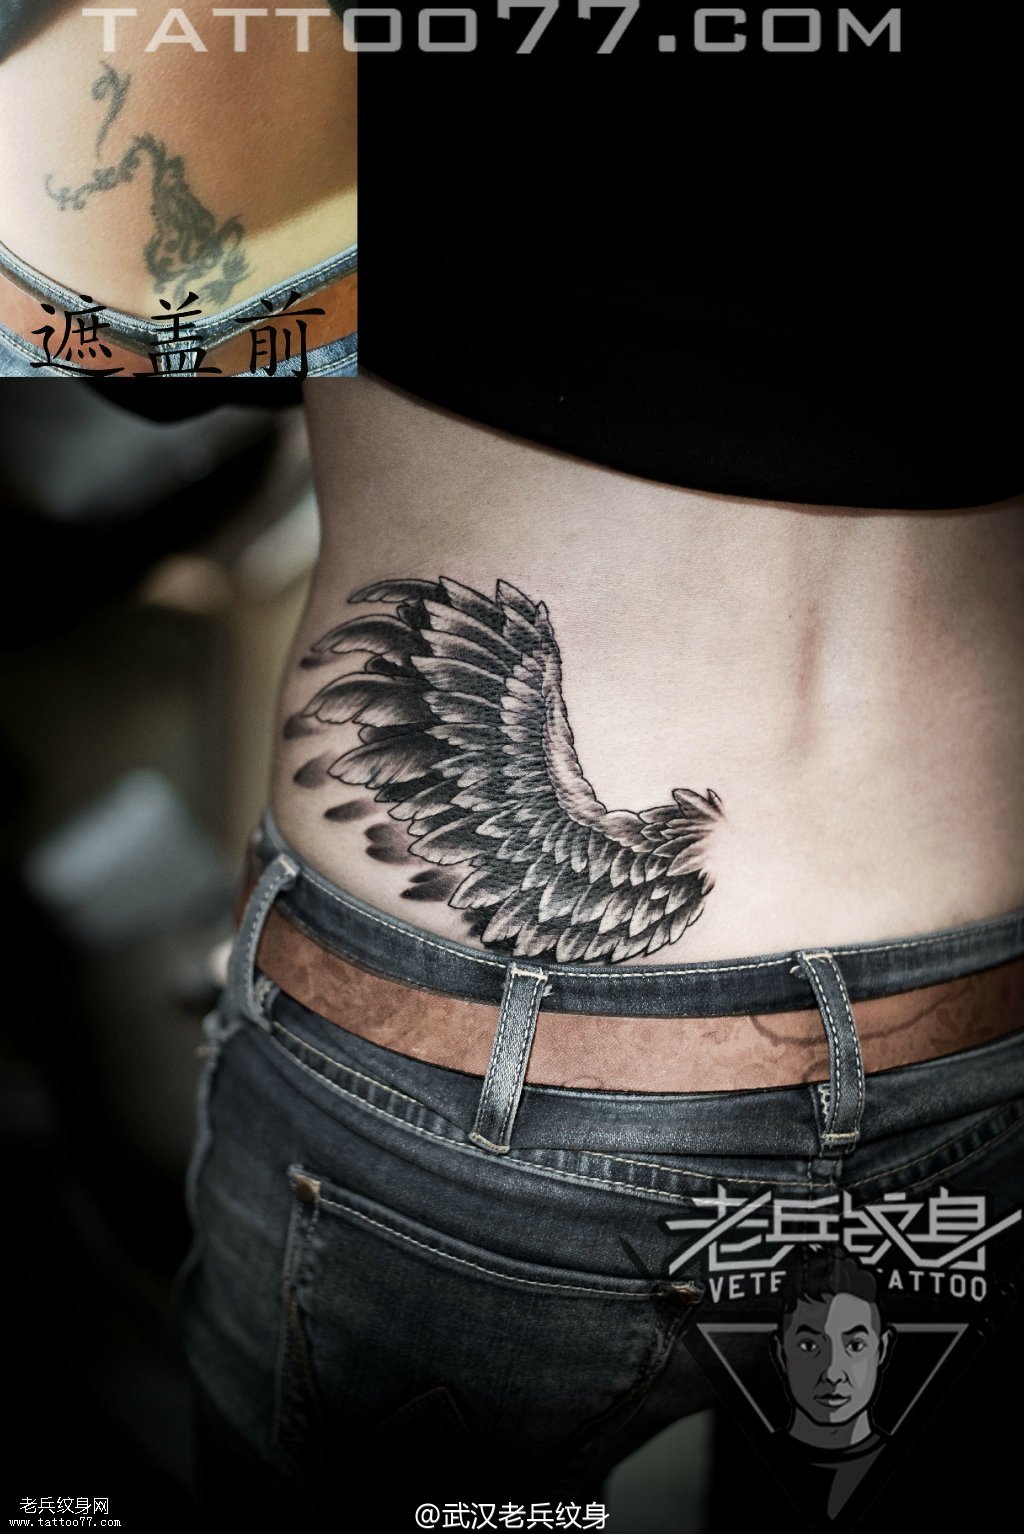 腰部翅膀纹身图案作品遮盖旧纹身